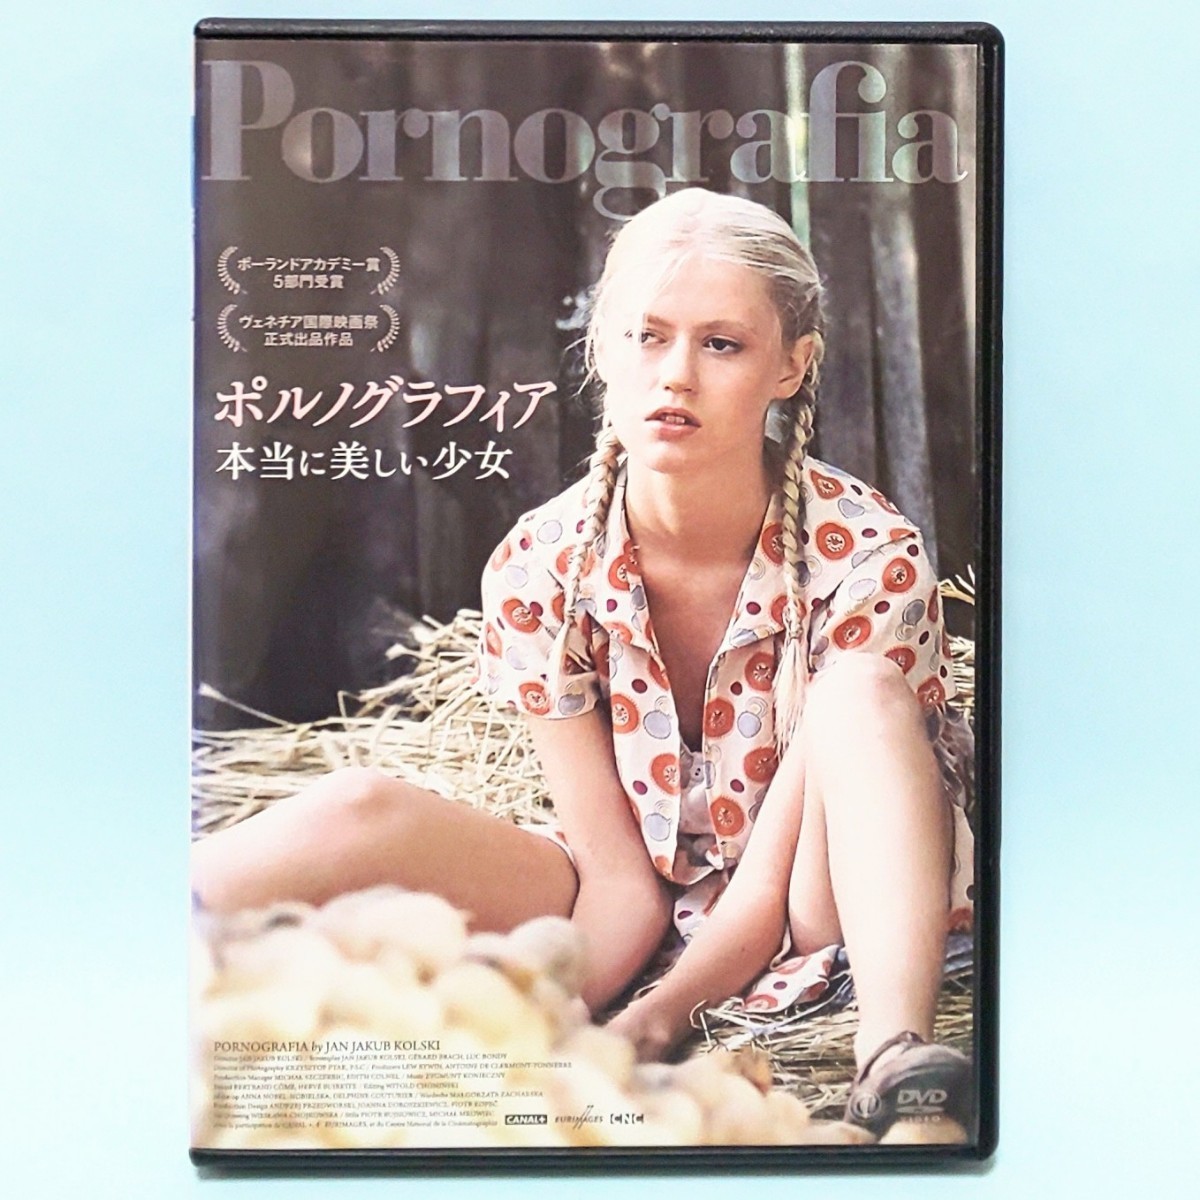 ポルノグラフィア 本当に美しい少女 レンタル版 DVD クシシュトフ・マイフシャク サンドラ・サモス カジミェシュズ・マズール